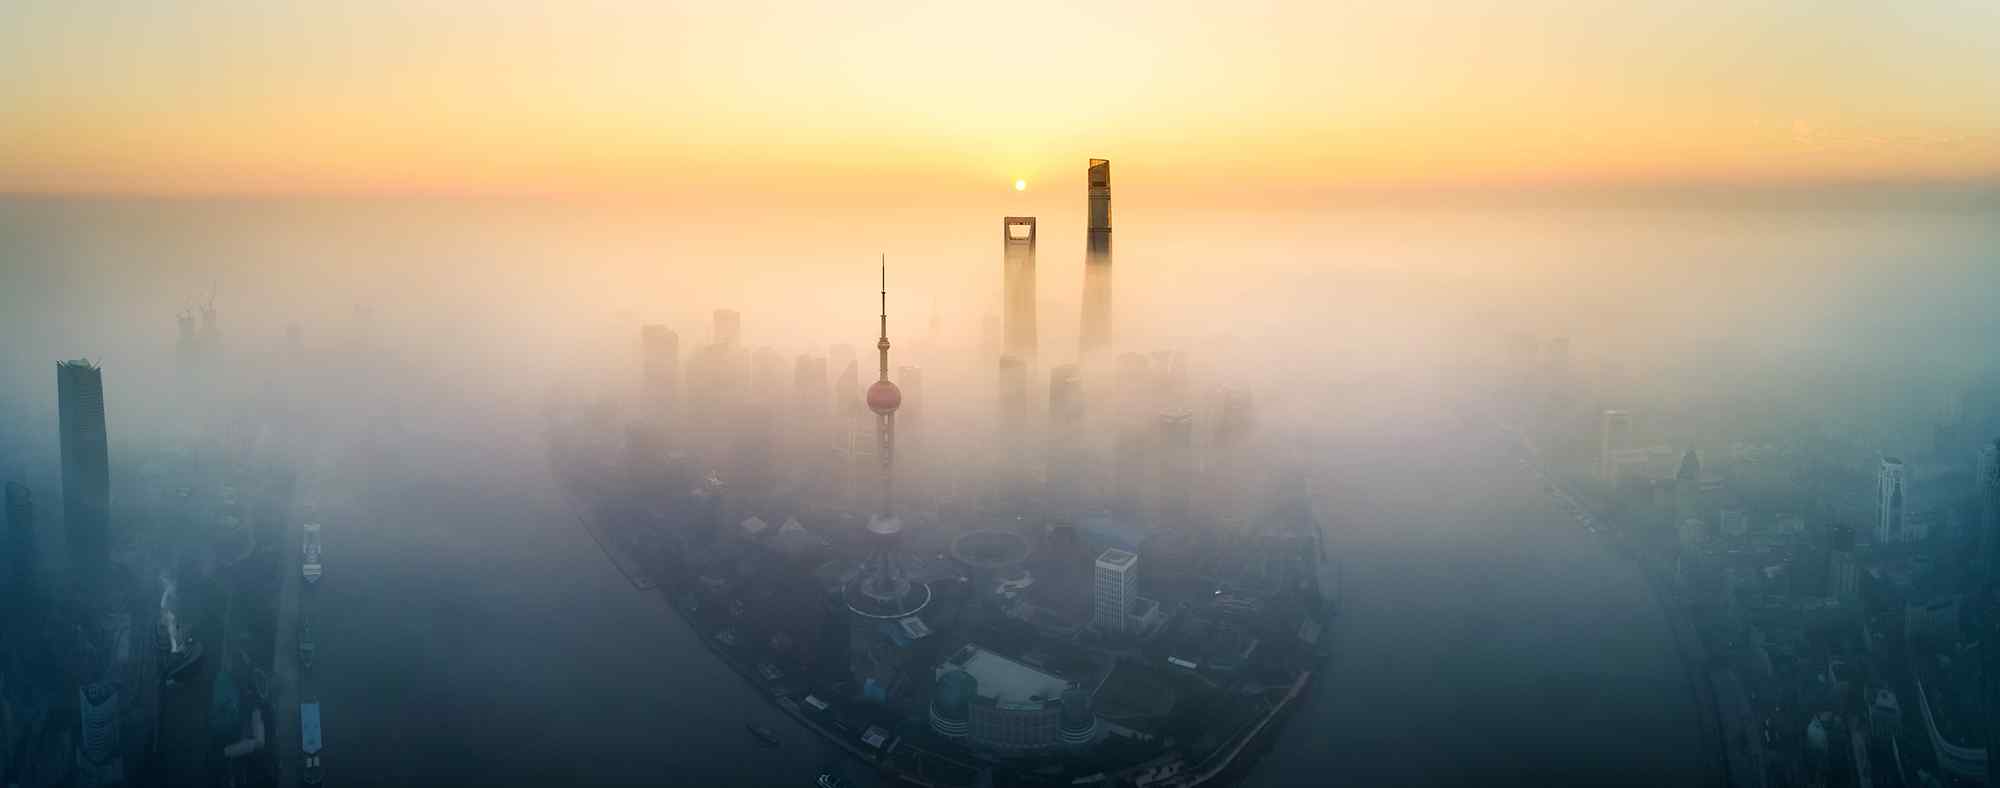 美丽魔都上海清晨风景图片高清桌面壁纸